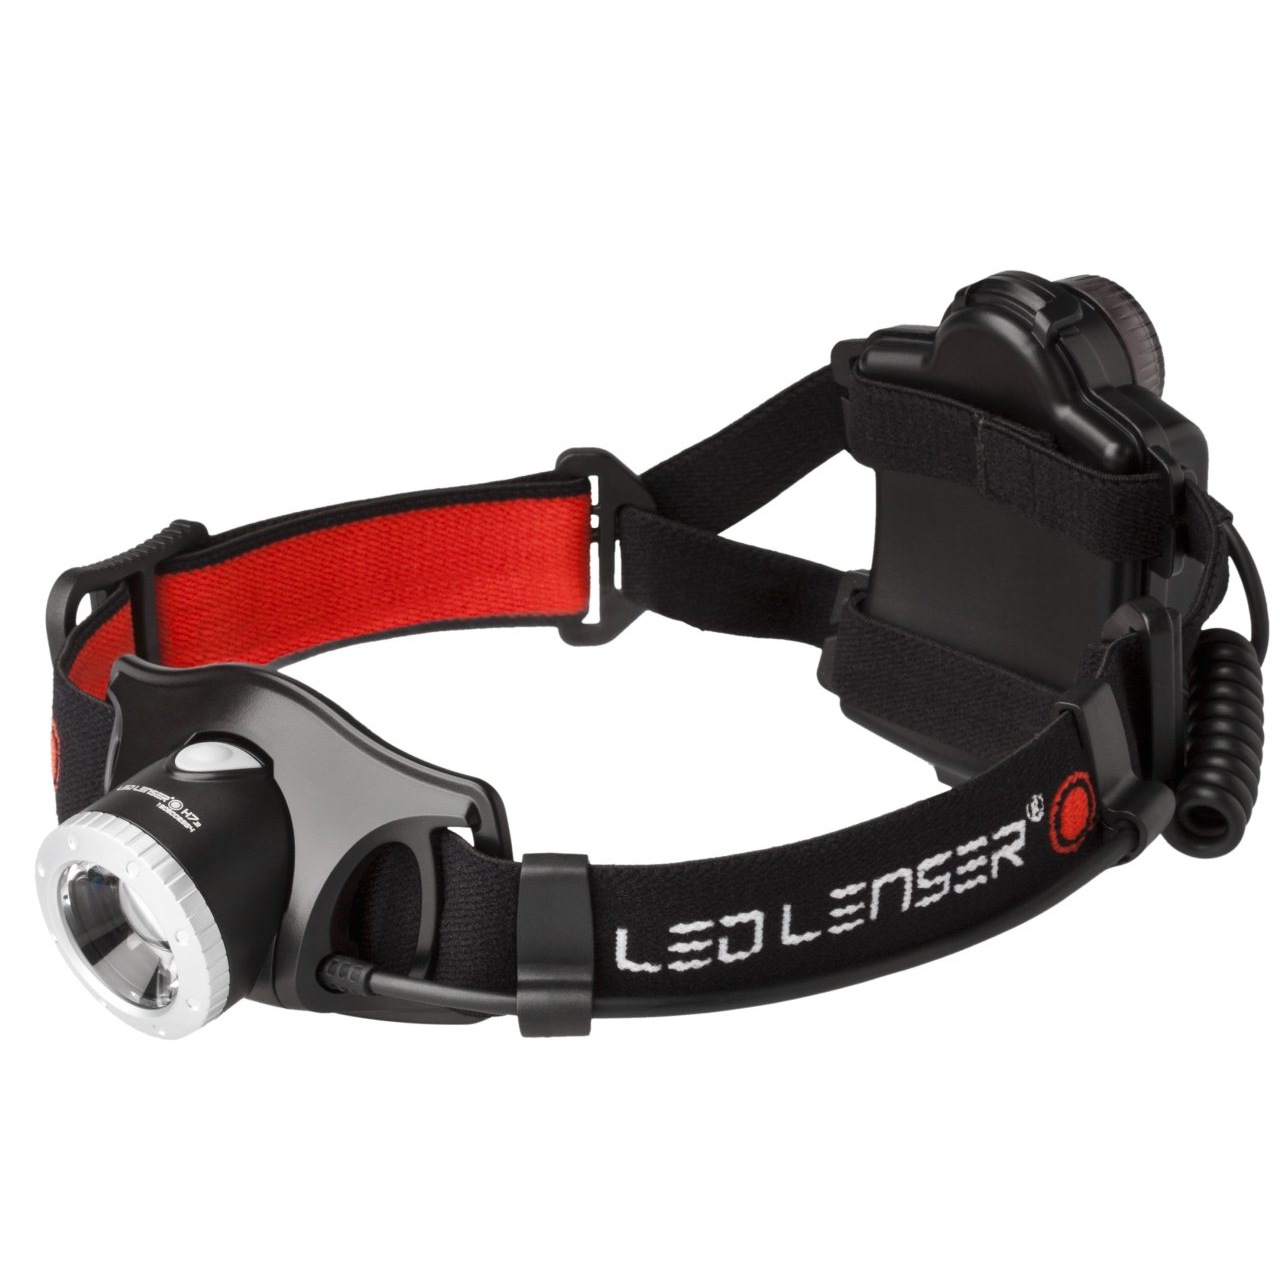 LED Lenser H7.2 - 250 lumens - 160m beam - Multi-mode head torch - official LED Lenser stockist